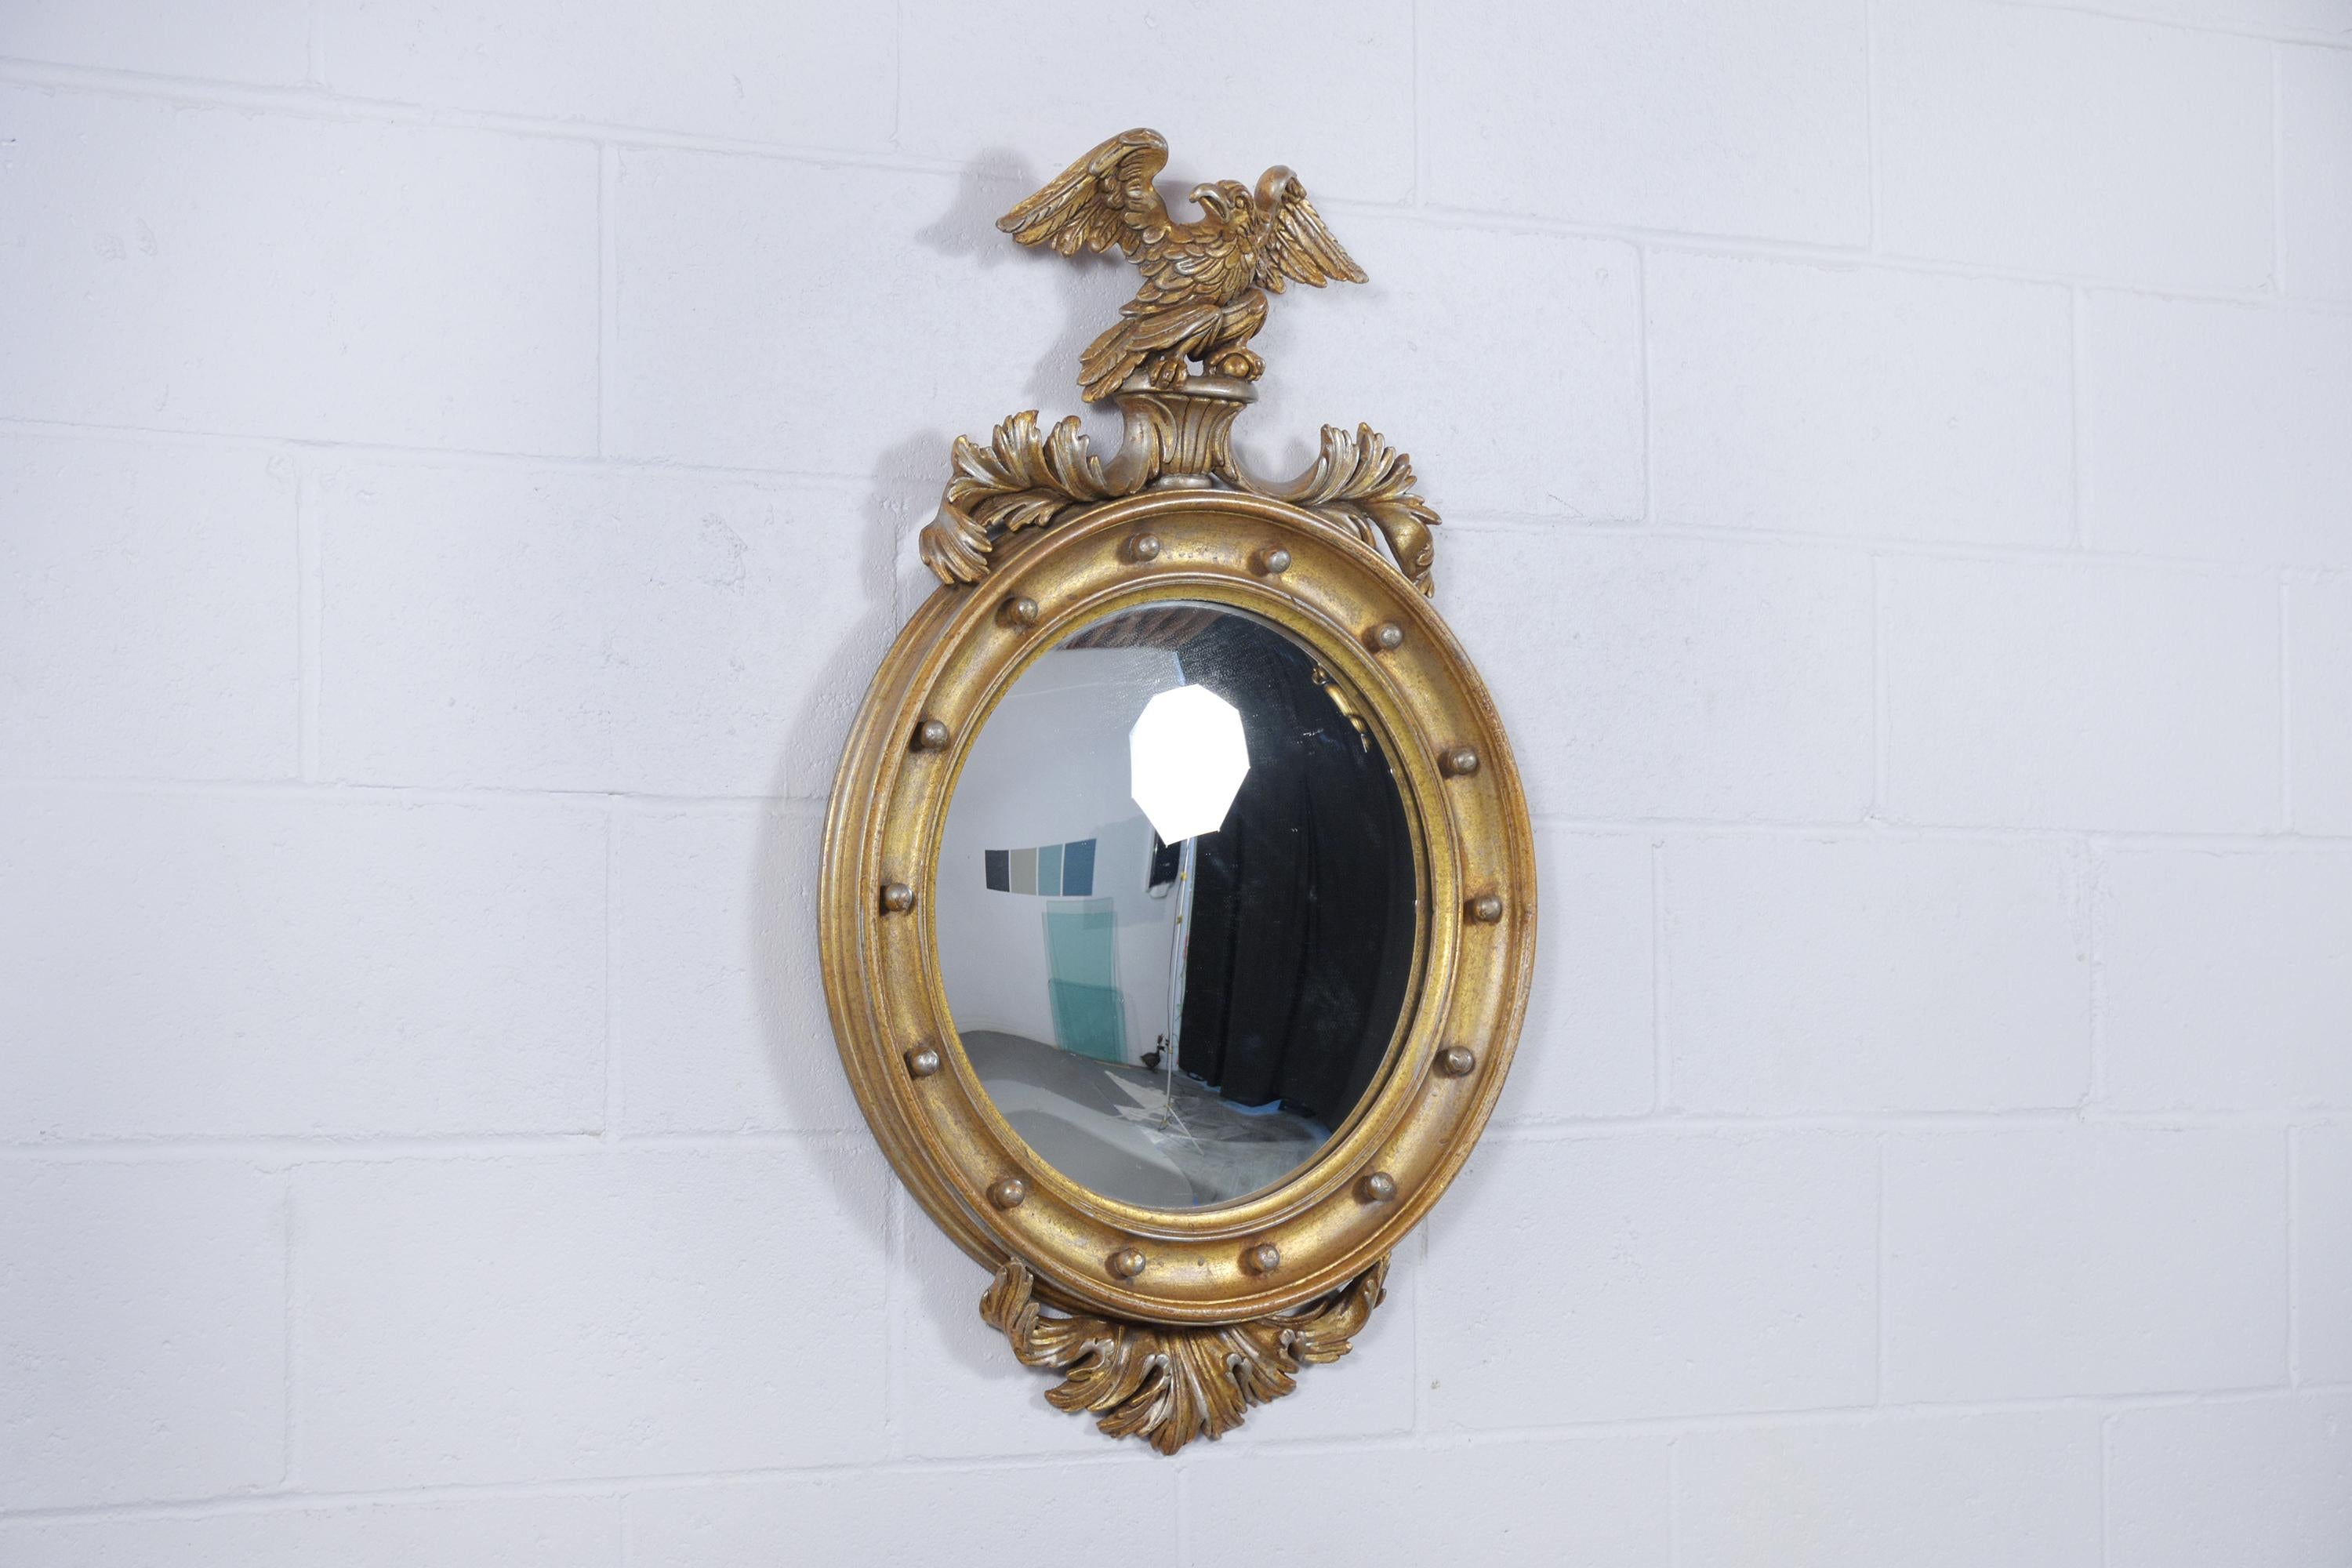 Plongez dans la sophistication de notre miroir mural ovale vintage italo-américain de style Feder. Cette pièce exquise est fabriquée à la main à partir de bois d'érable de première qualité, démontrant la finesse et l'habileté de l'artisanat